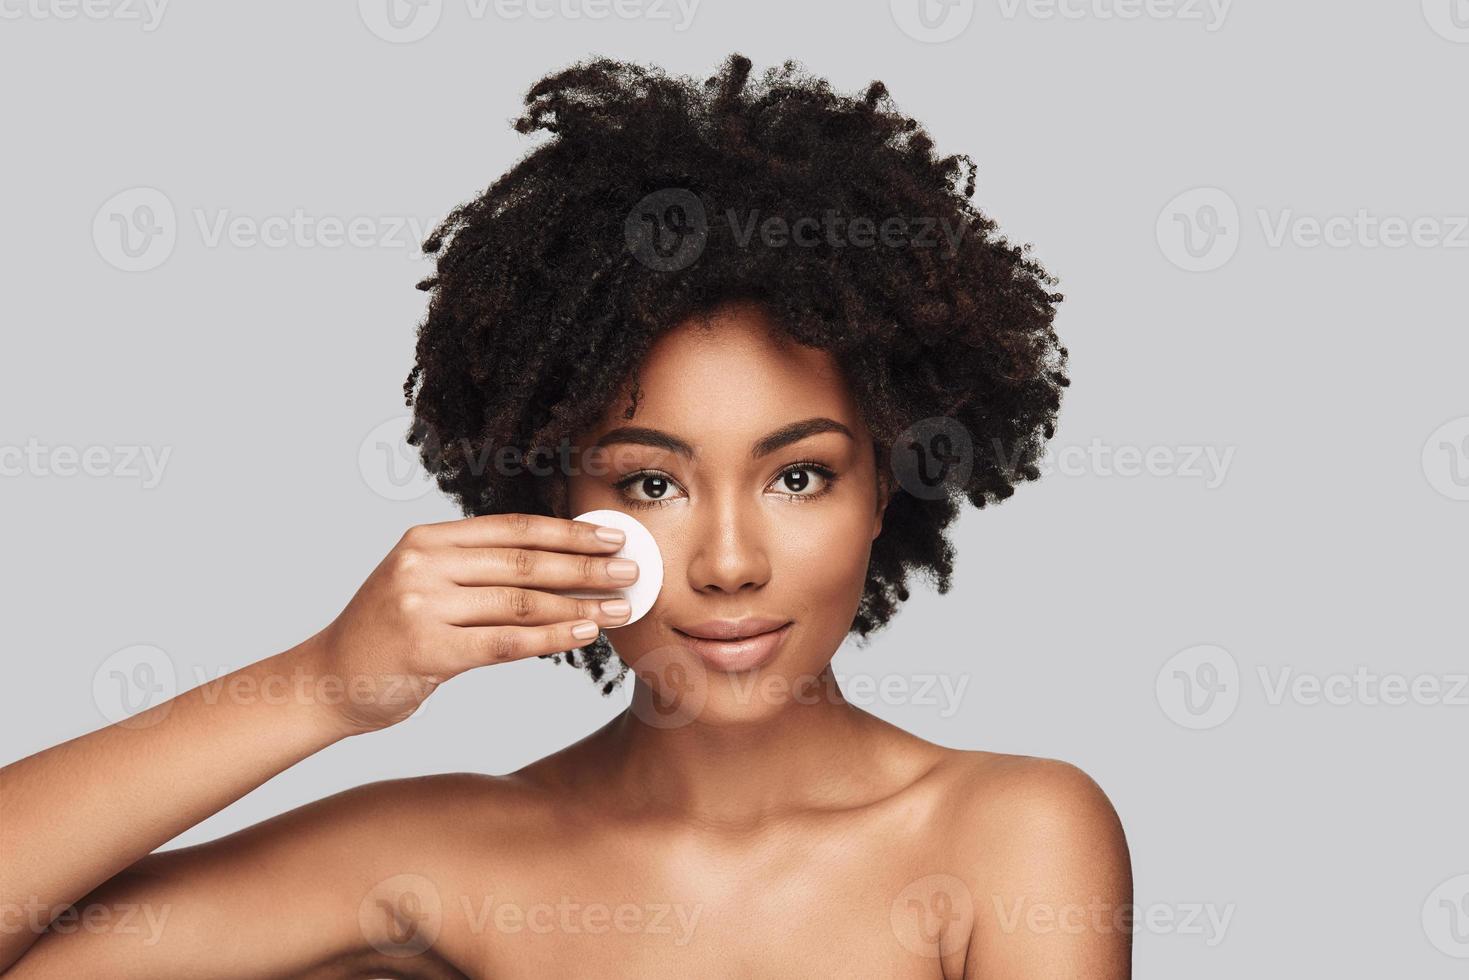 verwennerij. aantrekkelijk jong Afrikaanse vrouw toepassen schoonmaak spons en glimlachen terwijl staand tegen grijs achtergrond foto